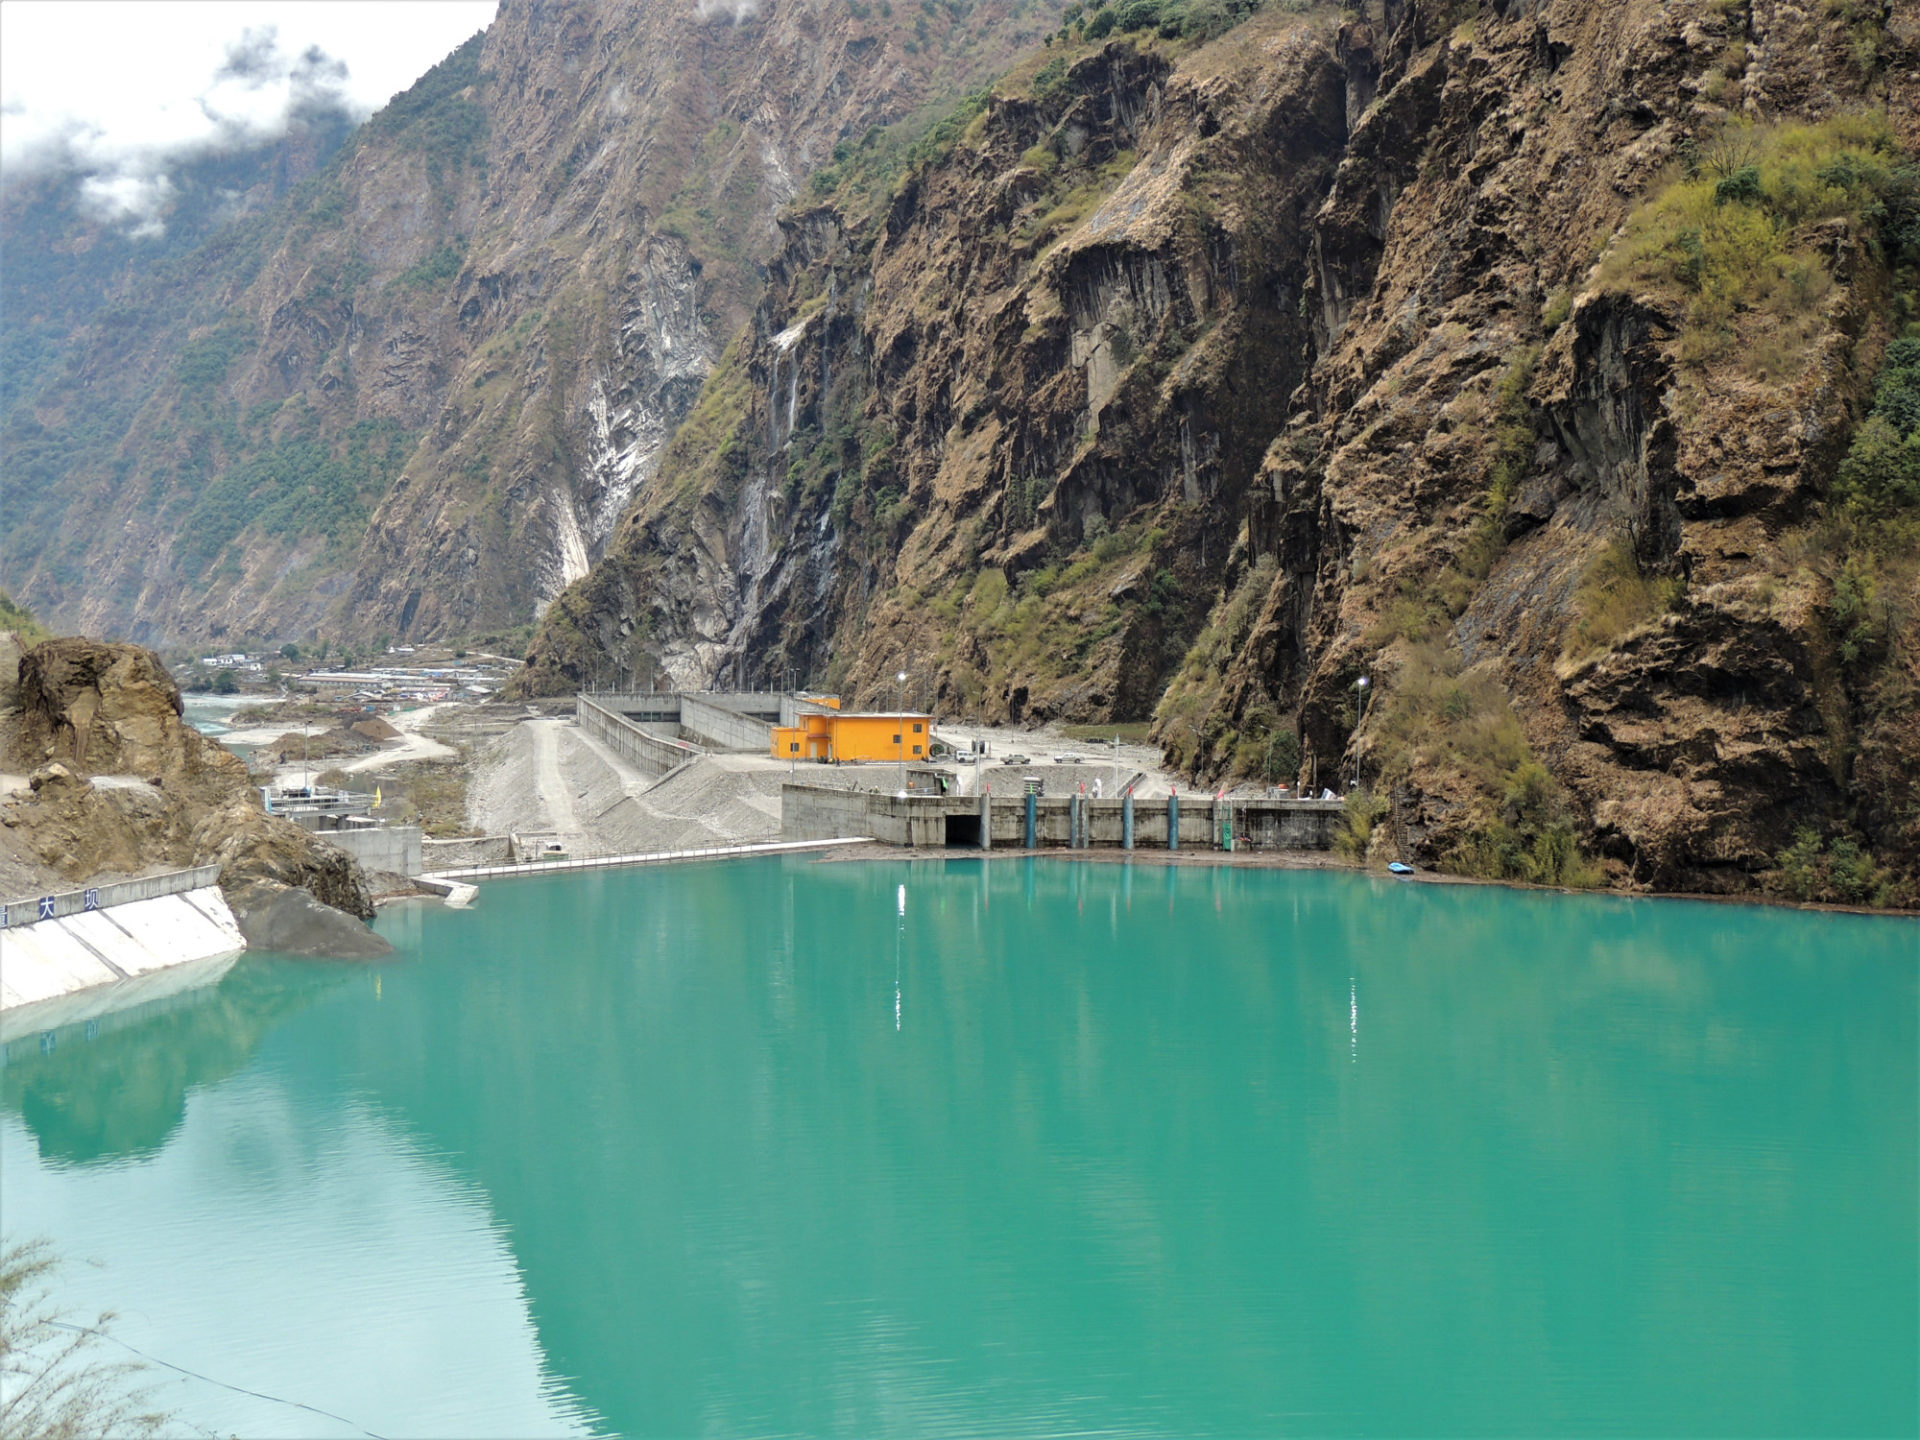 Erste Befüllung: Stausee Tamakoshi sichert Energieversorgung in Nepal